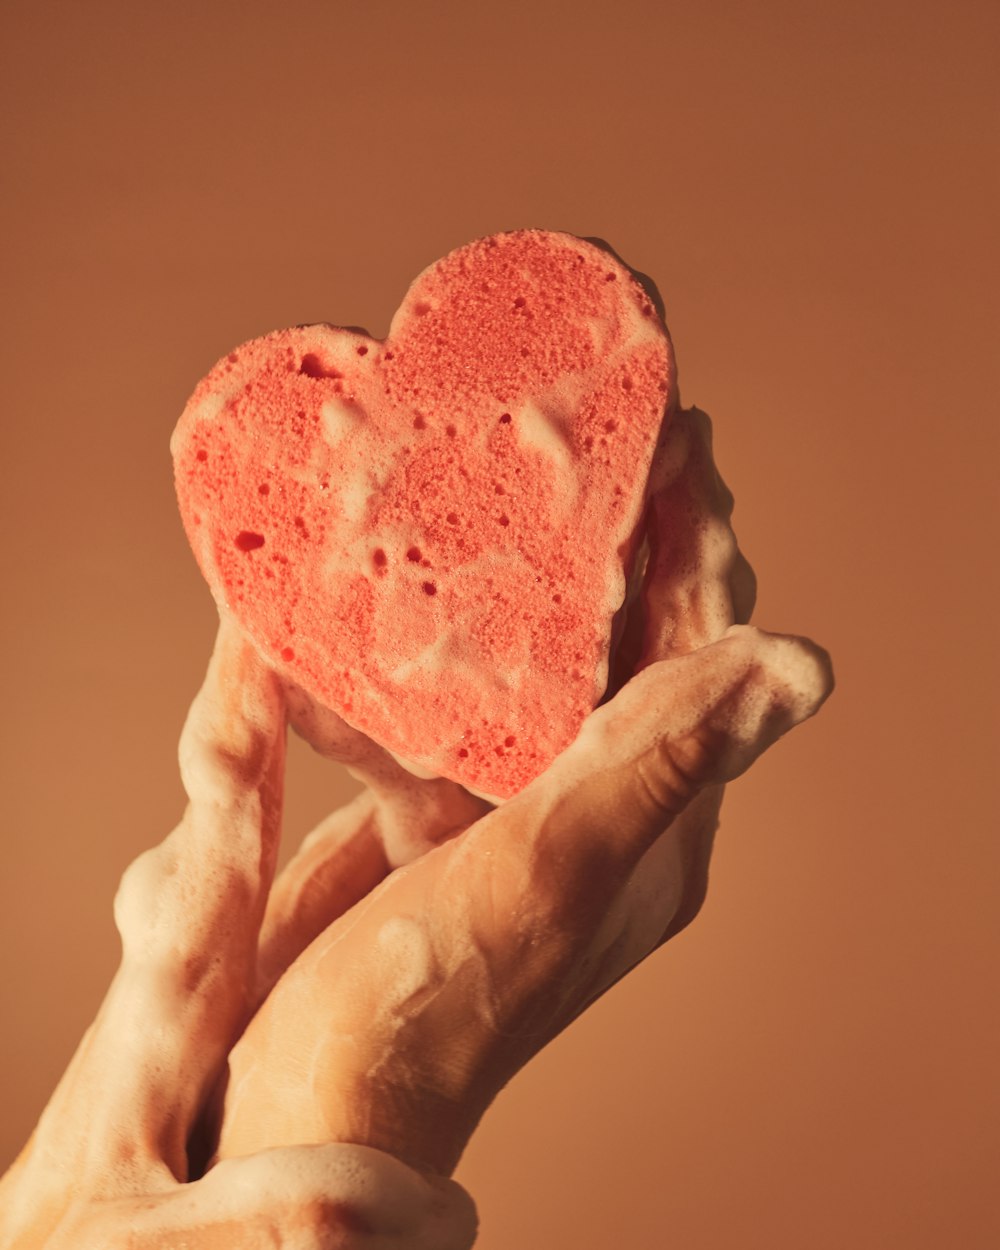 Persona sosteniendo un helado rojo en forma de corazón